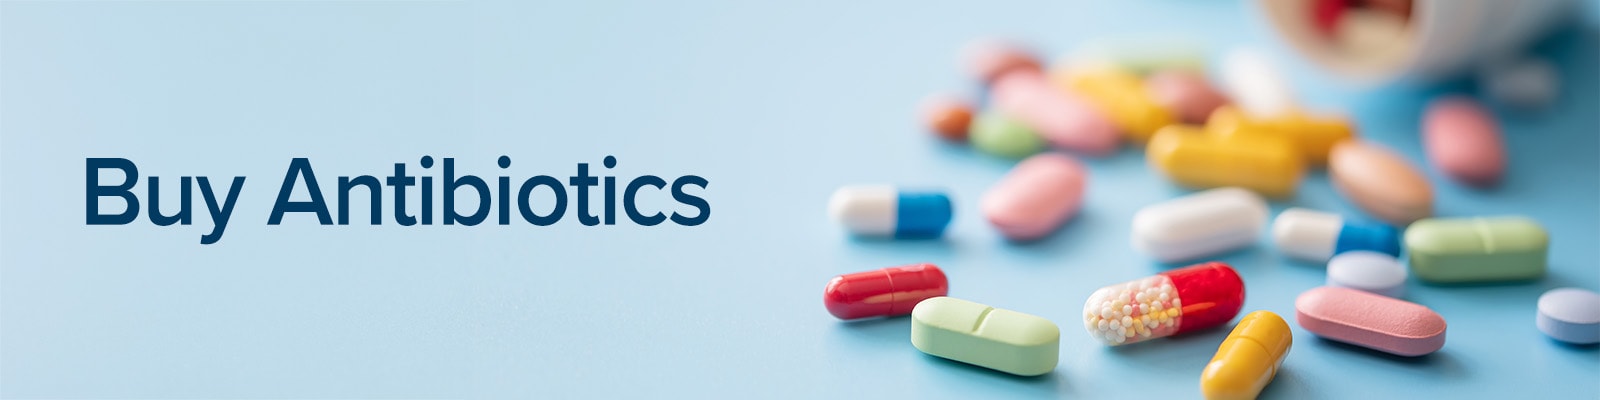 Buy Antibiotics - Henry Schein Medical